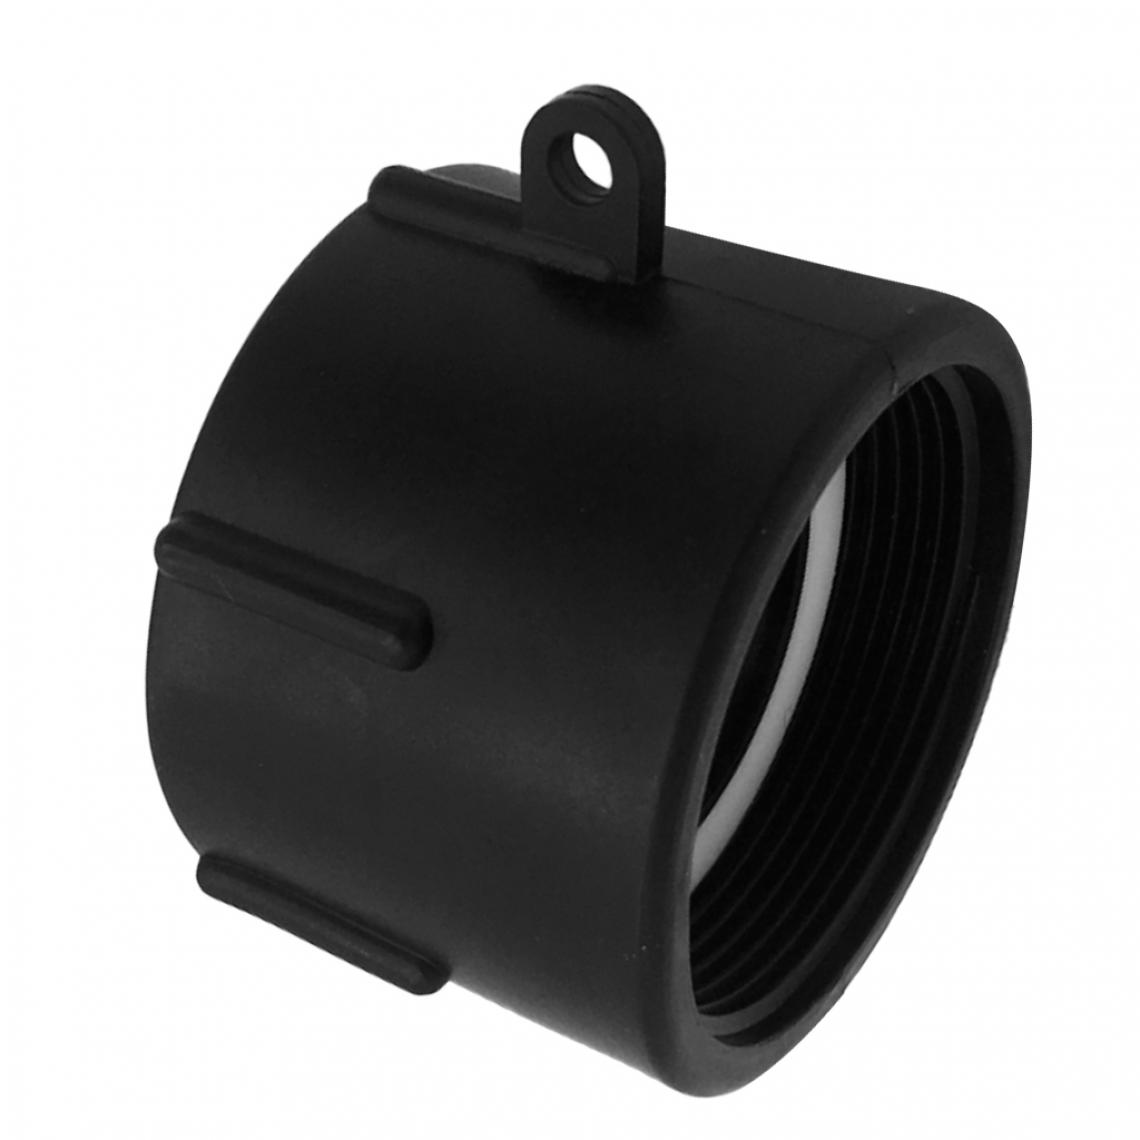 marque generique - Adaptateur de tuyau flexible de réservoir d'eau IBC en plastique noir 1000L Raccords pour tuyaux Raccords filetés 66mm - Ampli